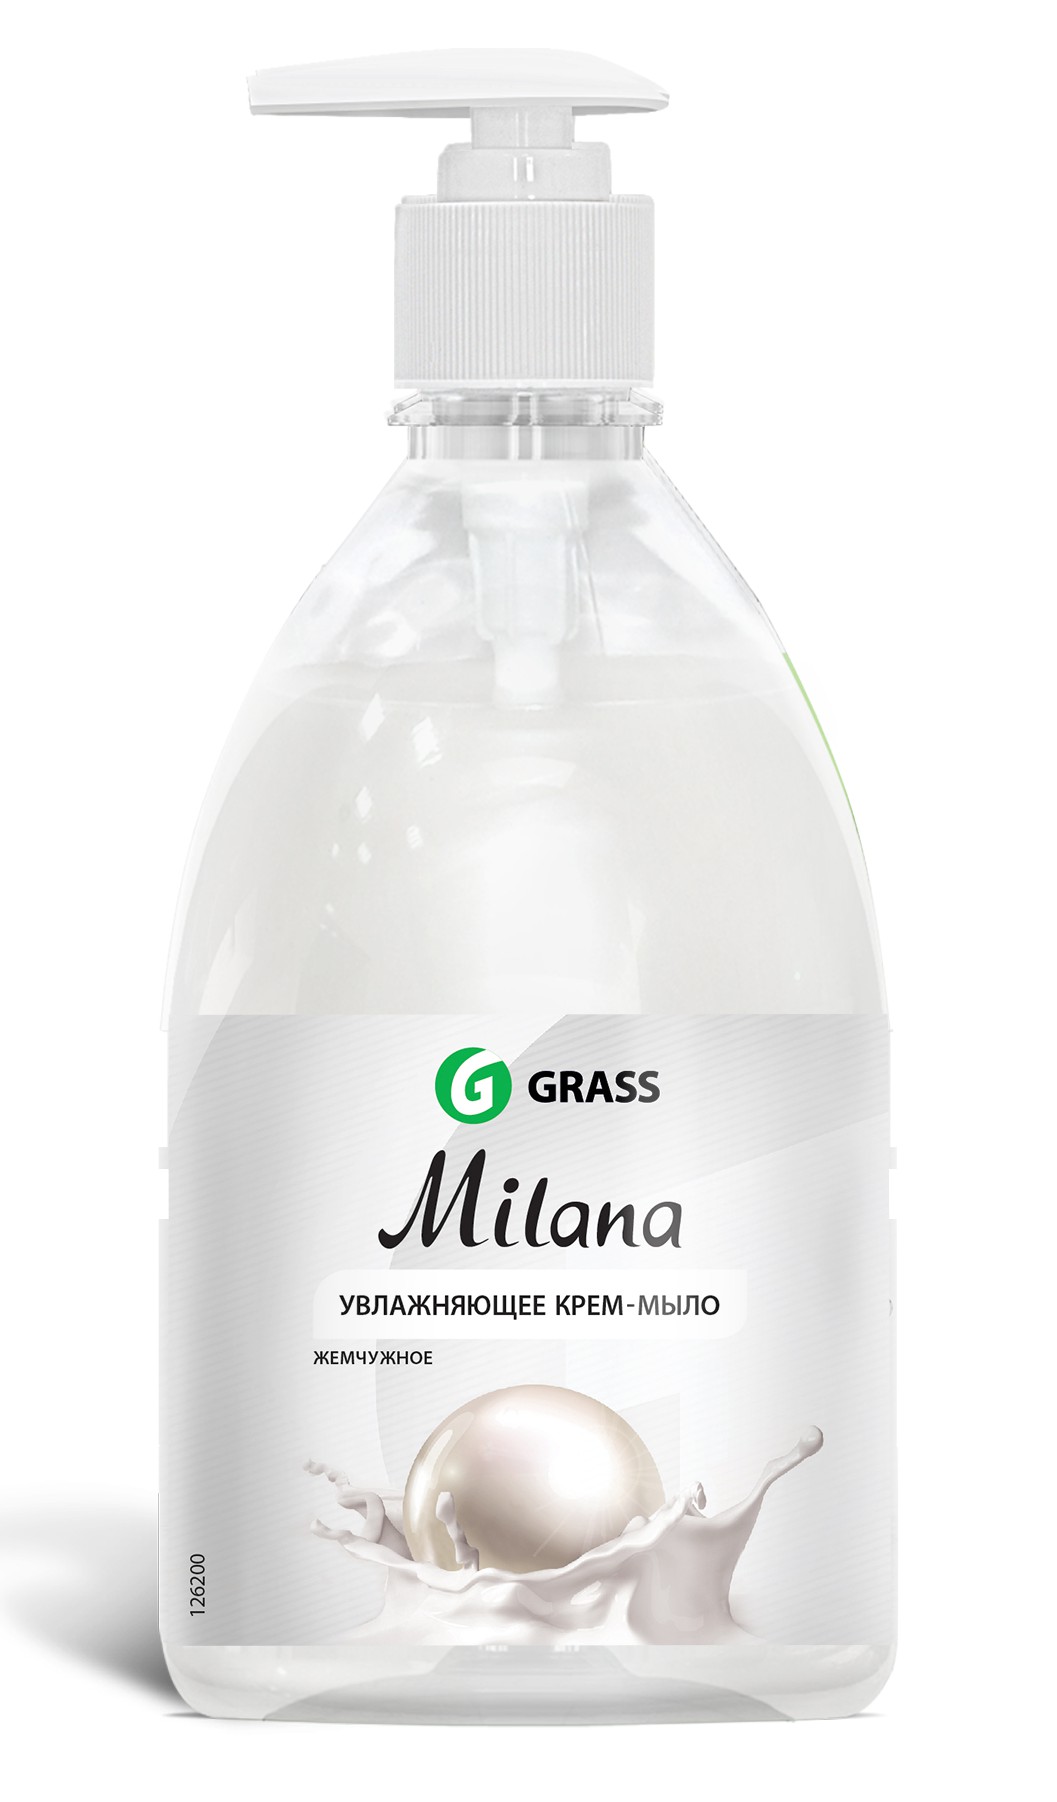 Grass  126200 Milana Жидкое крем-мыло жемчужное 500 мл с дозатором GRASS 1